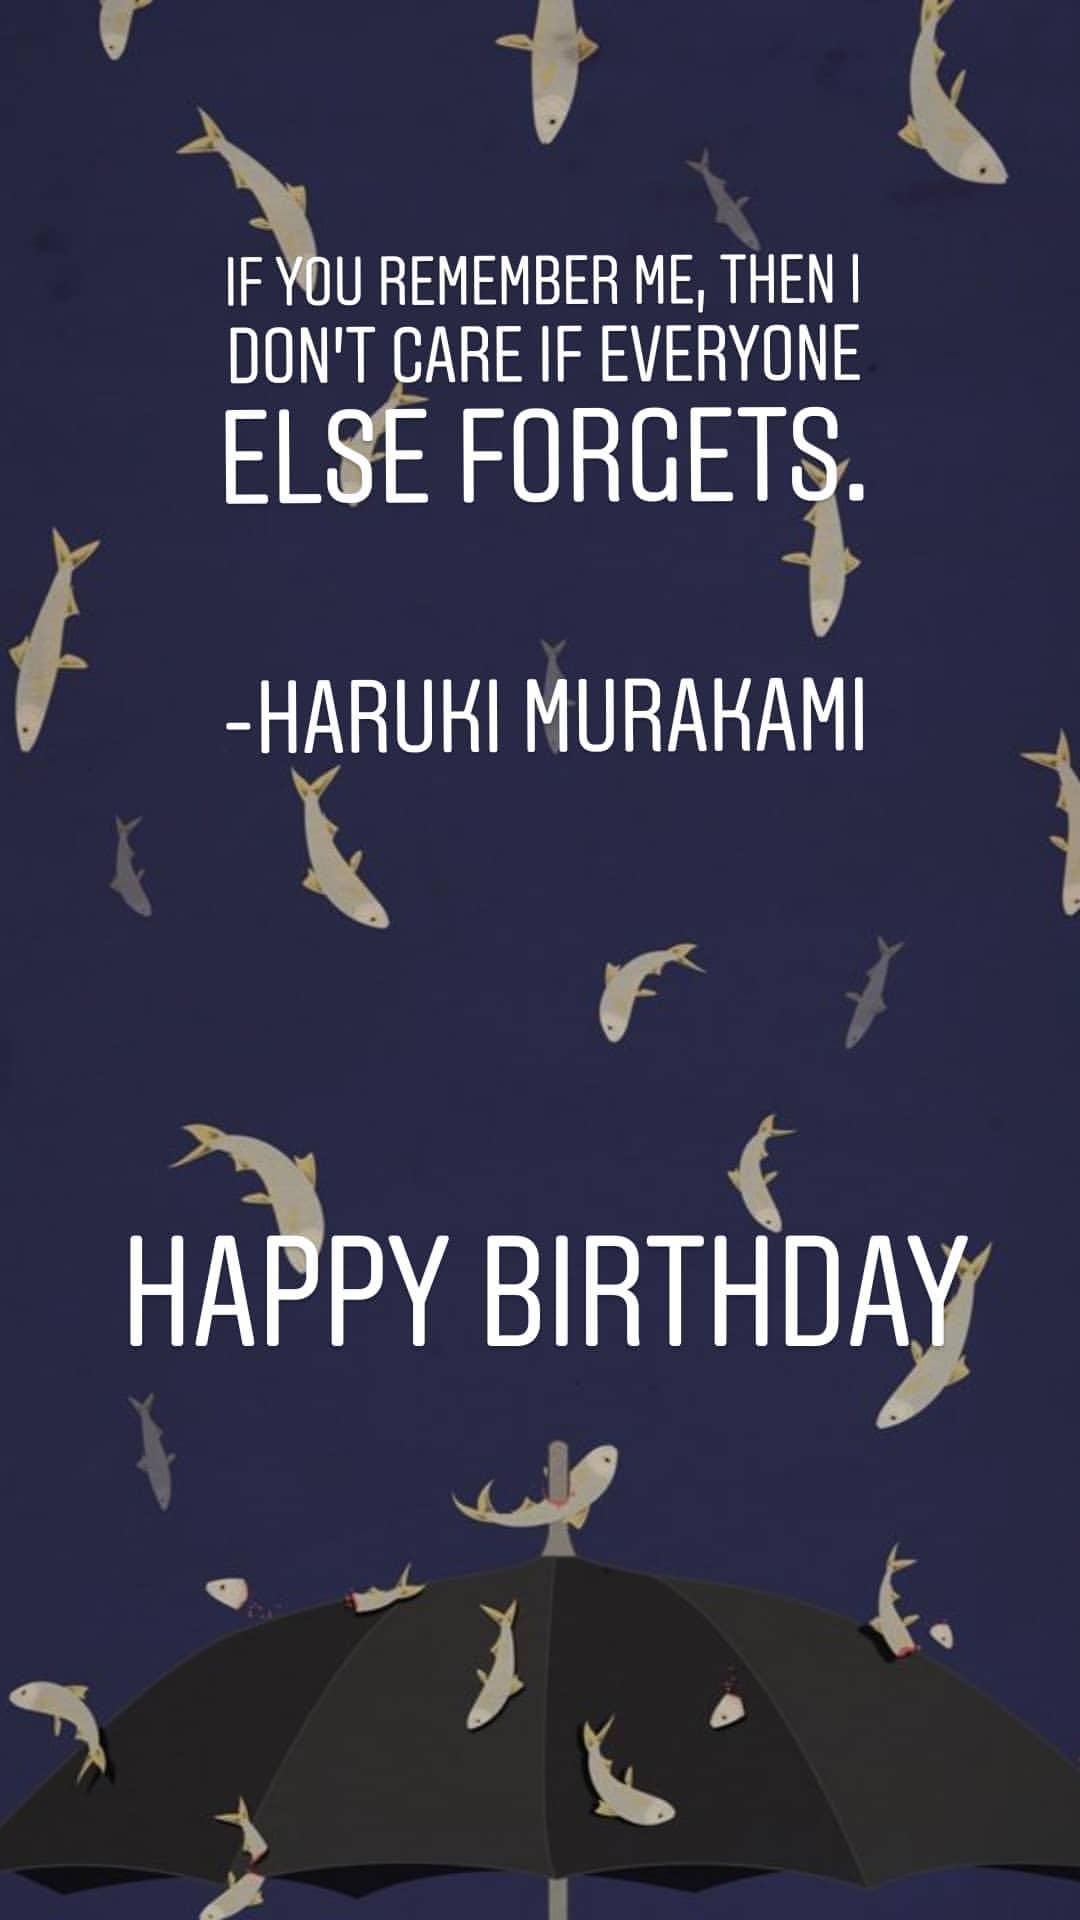 Happy birthday to my favourite author.
Haruki Murakami 